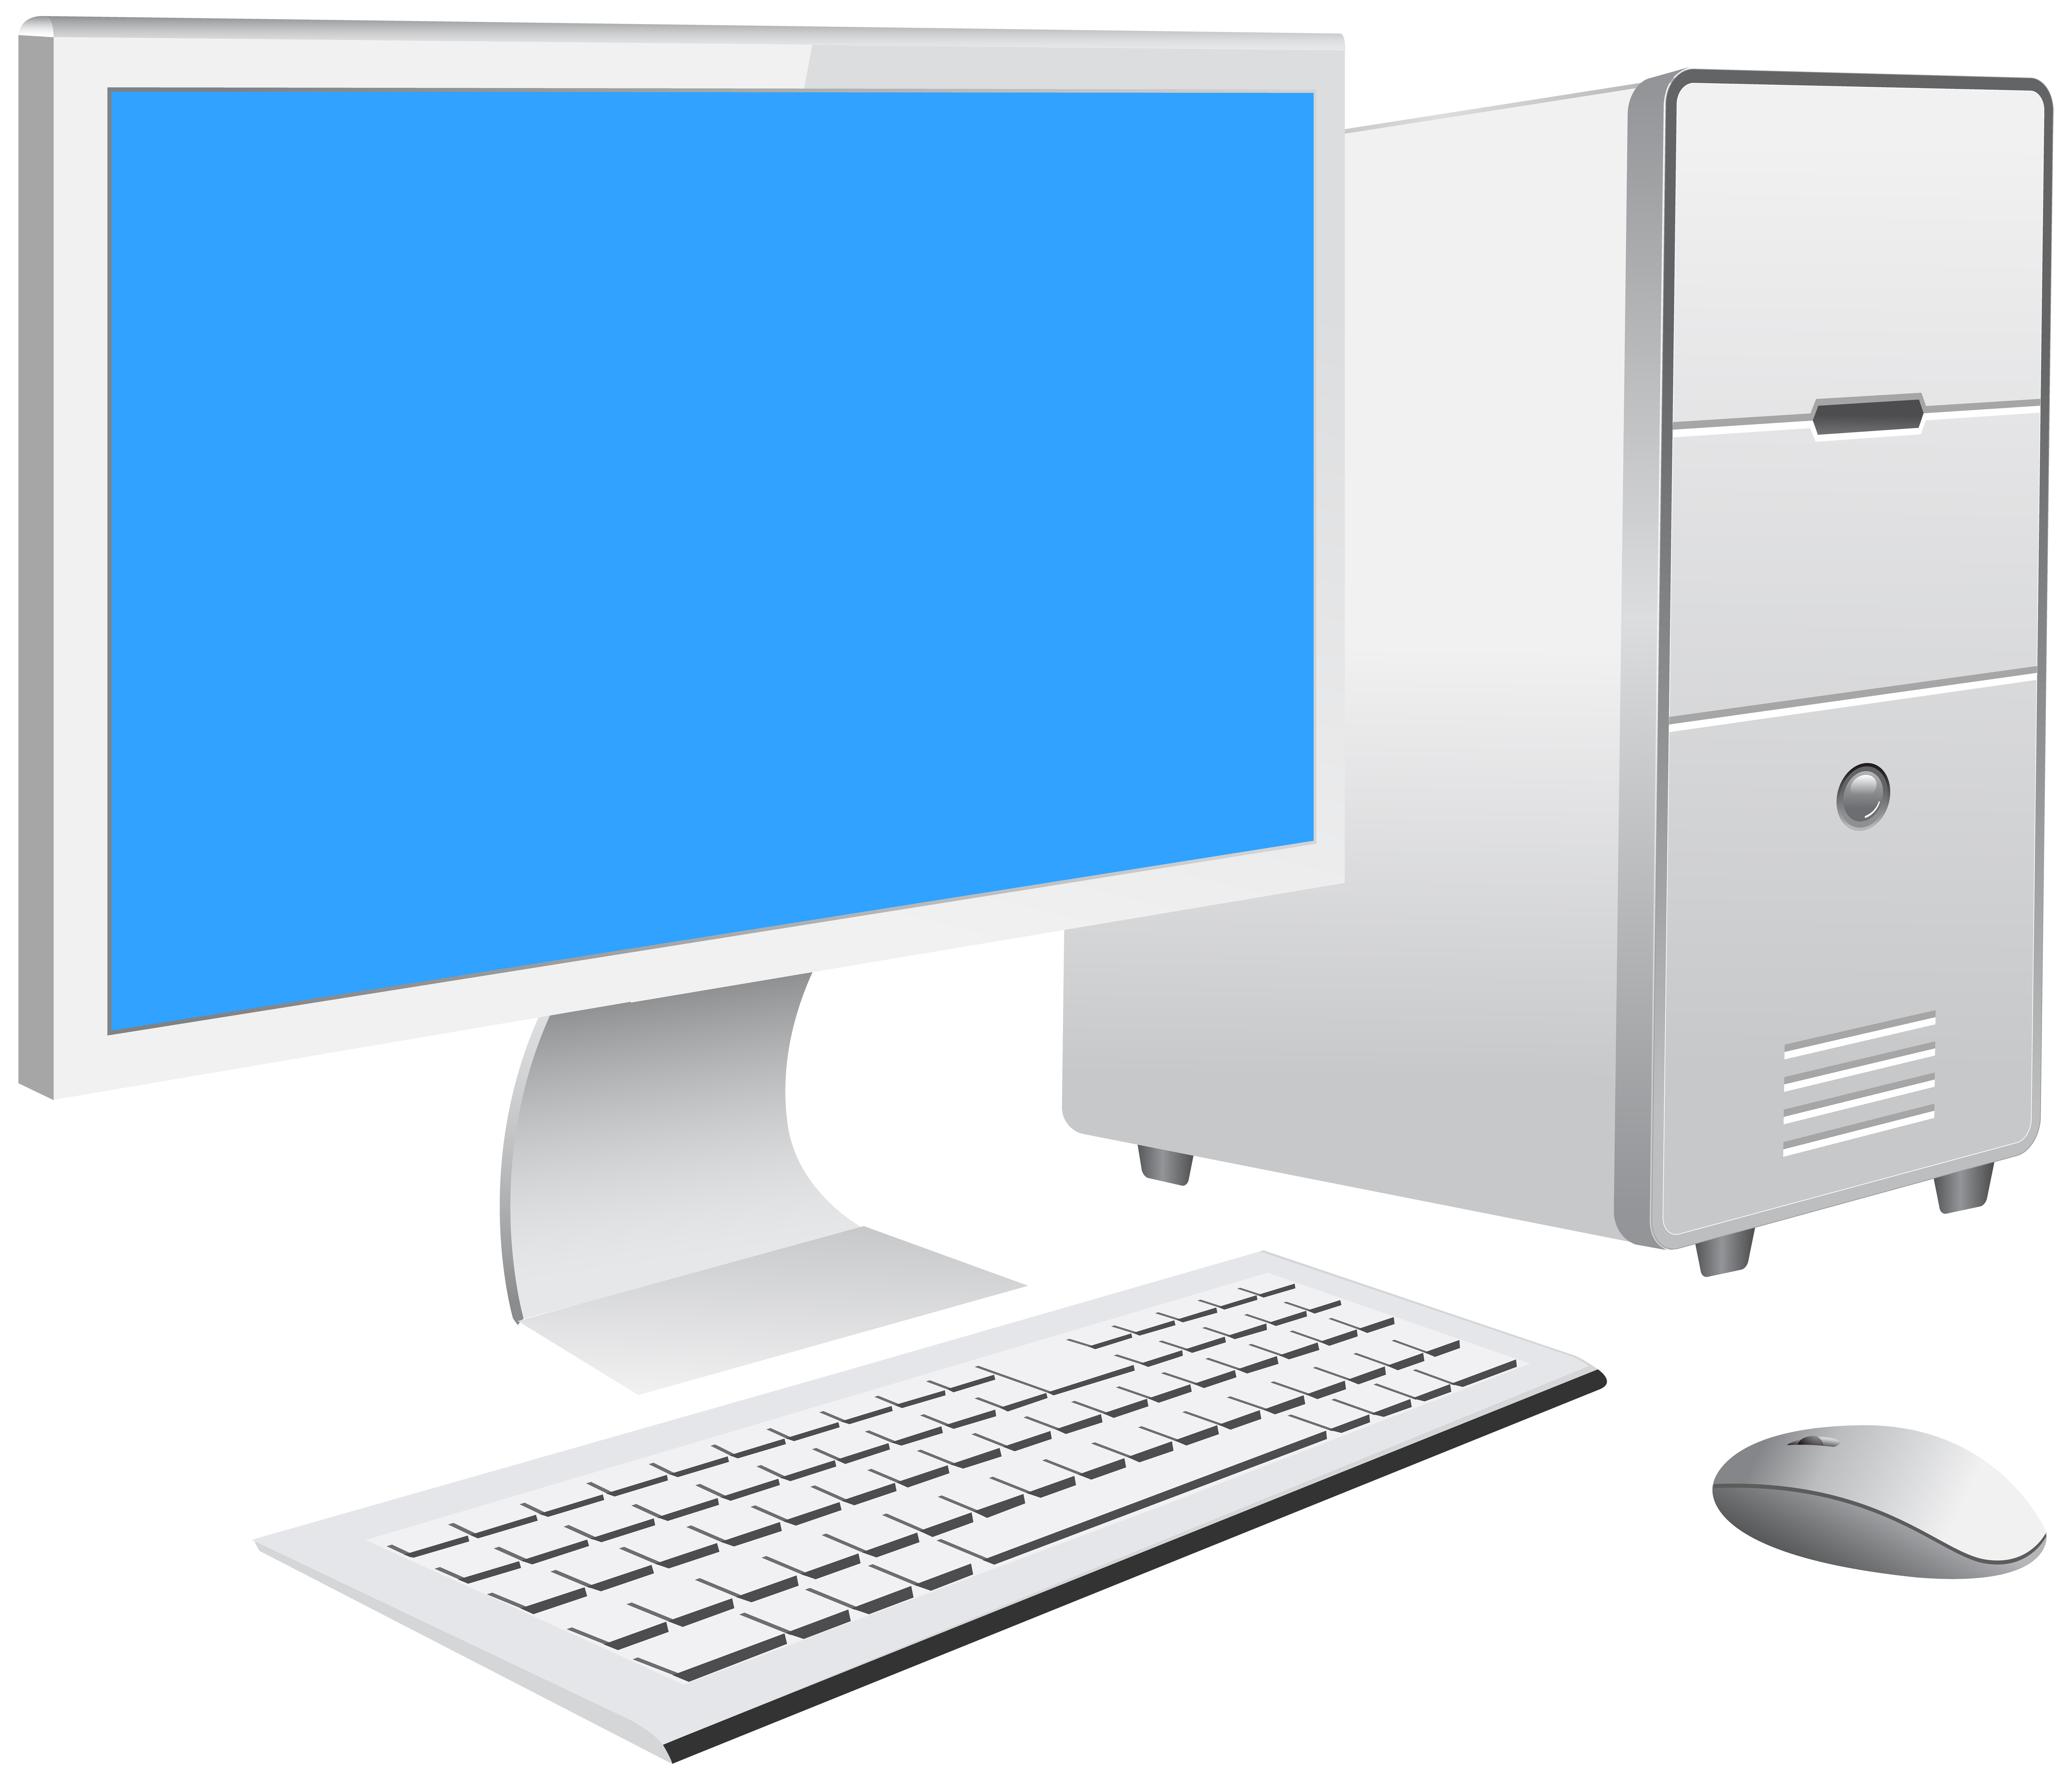 desktop computer png